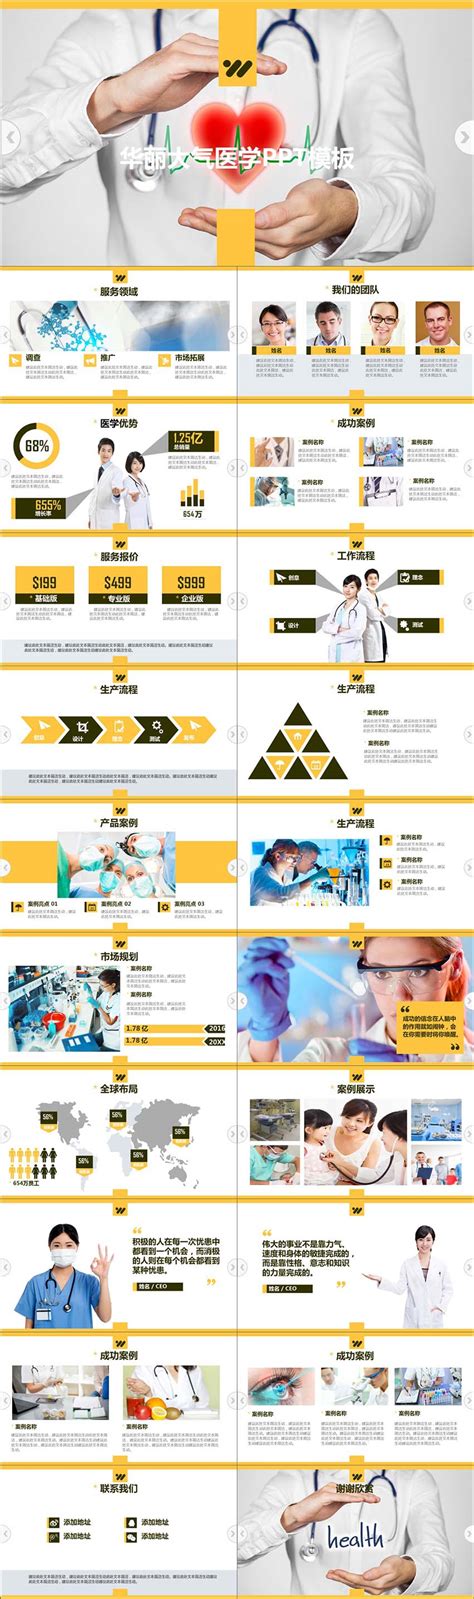 【产品推广PPT模板】医学医疗产品推广销售营销PPT模板下载–演界网